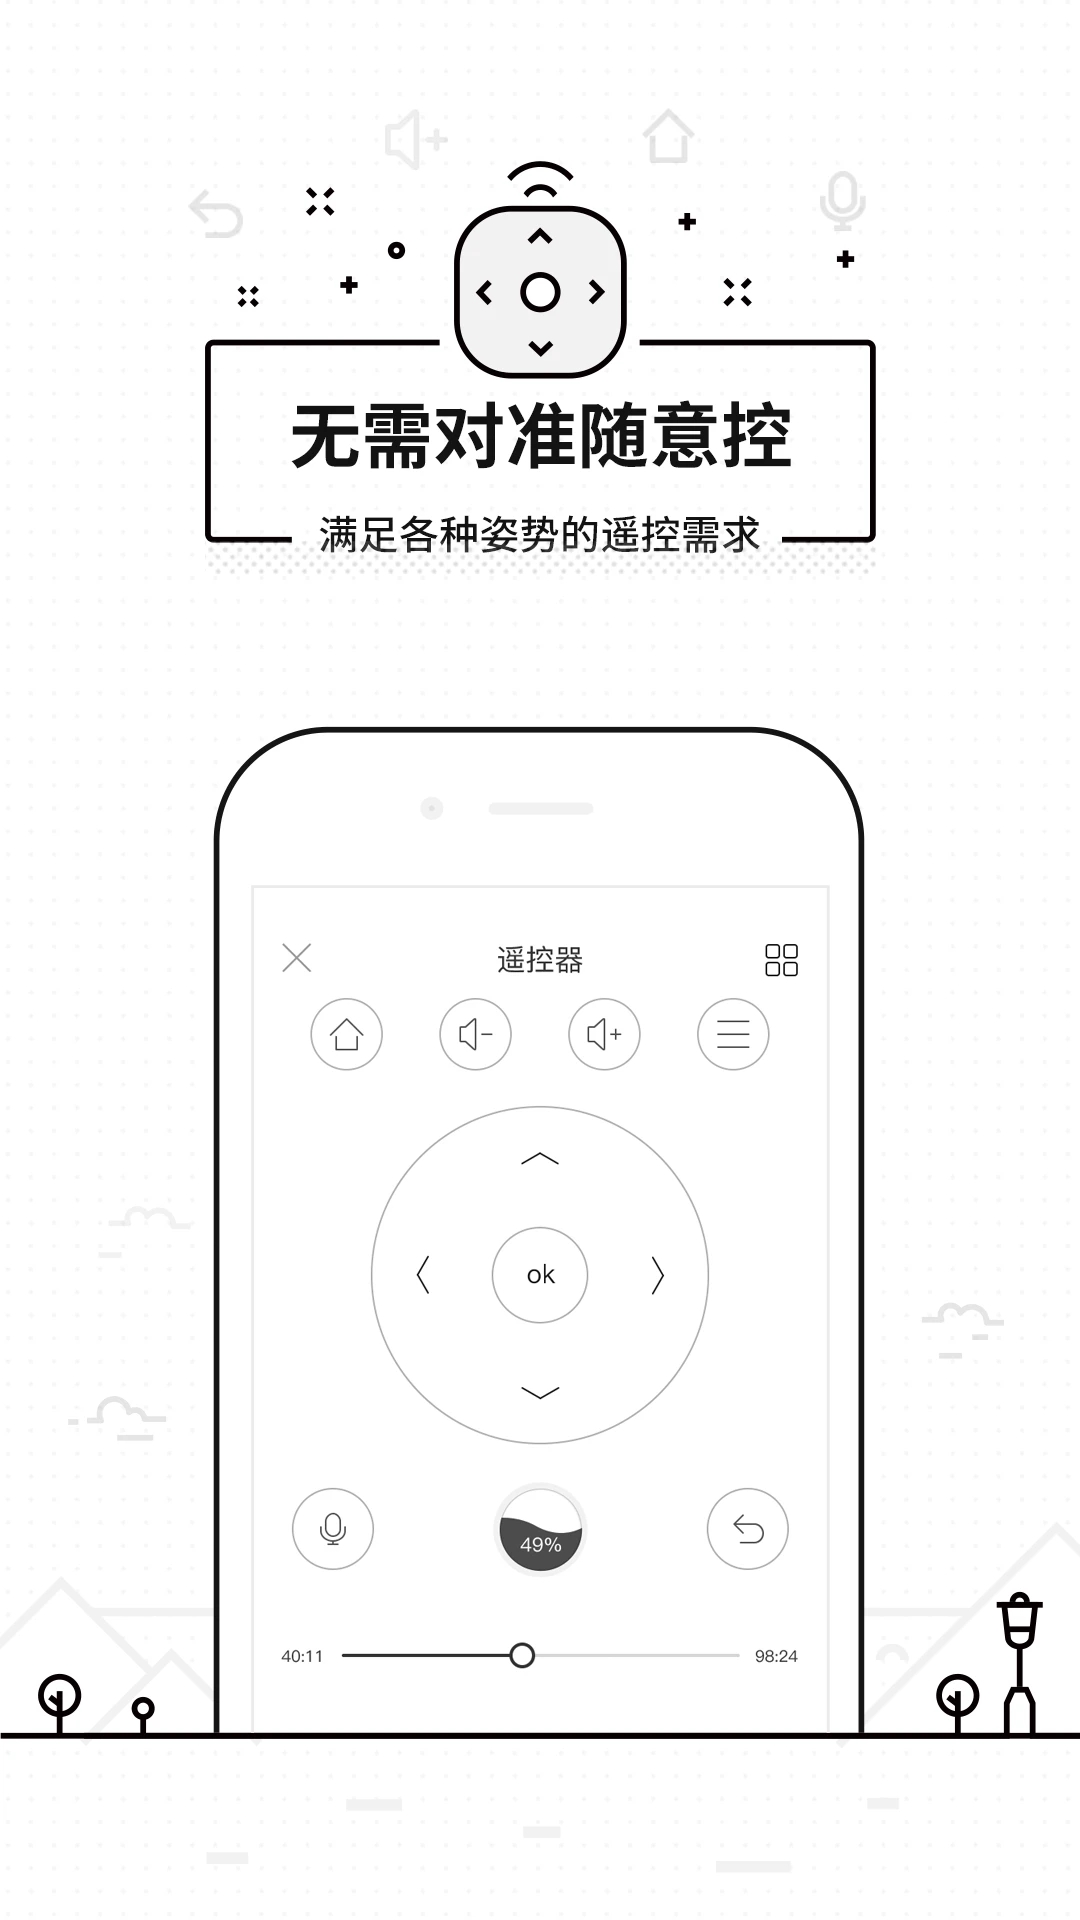 悟空遥控器 for Android